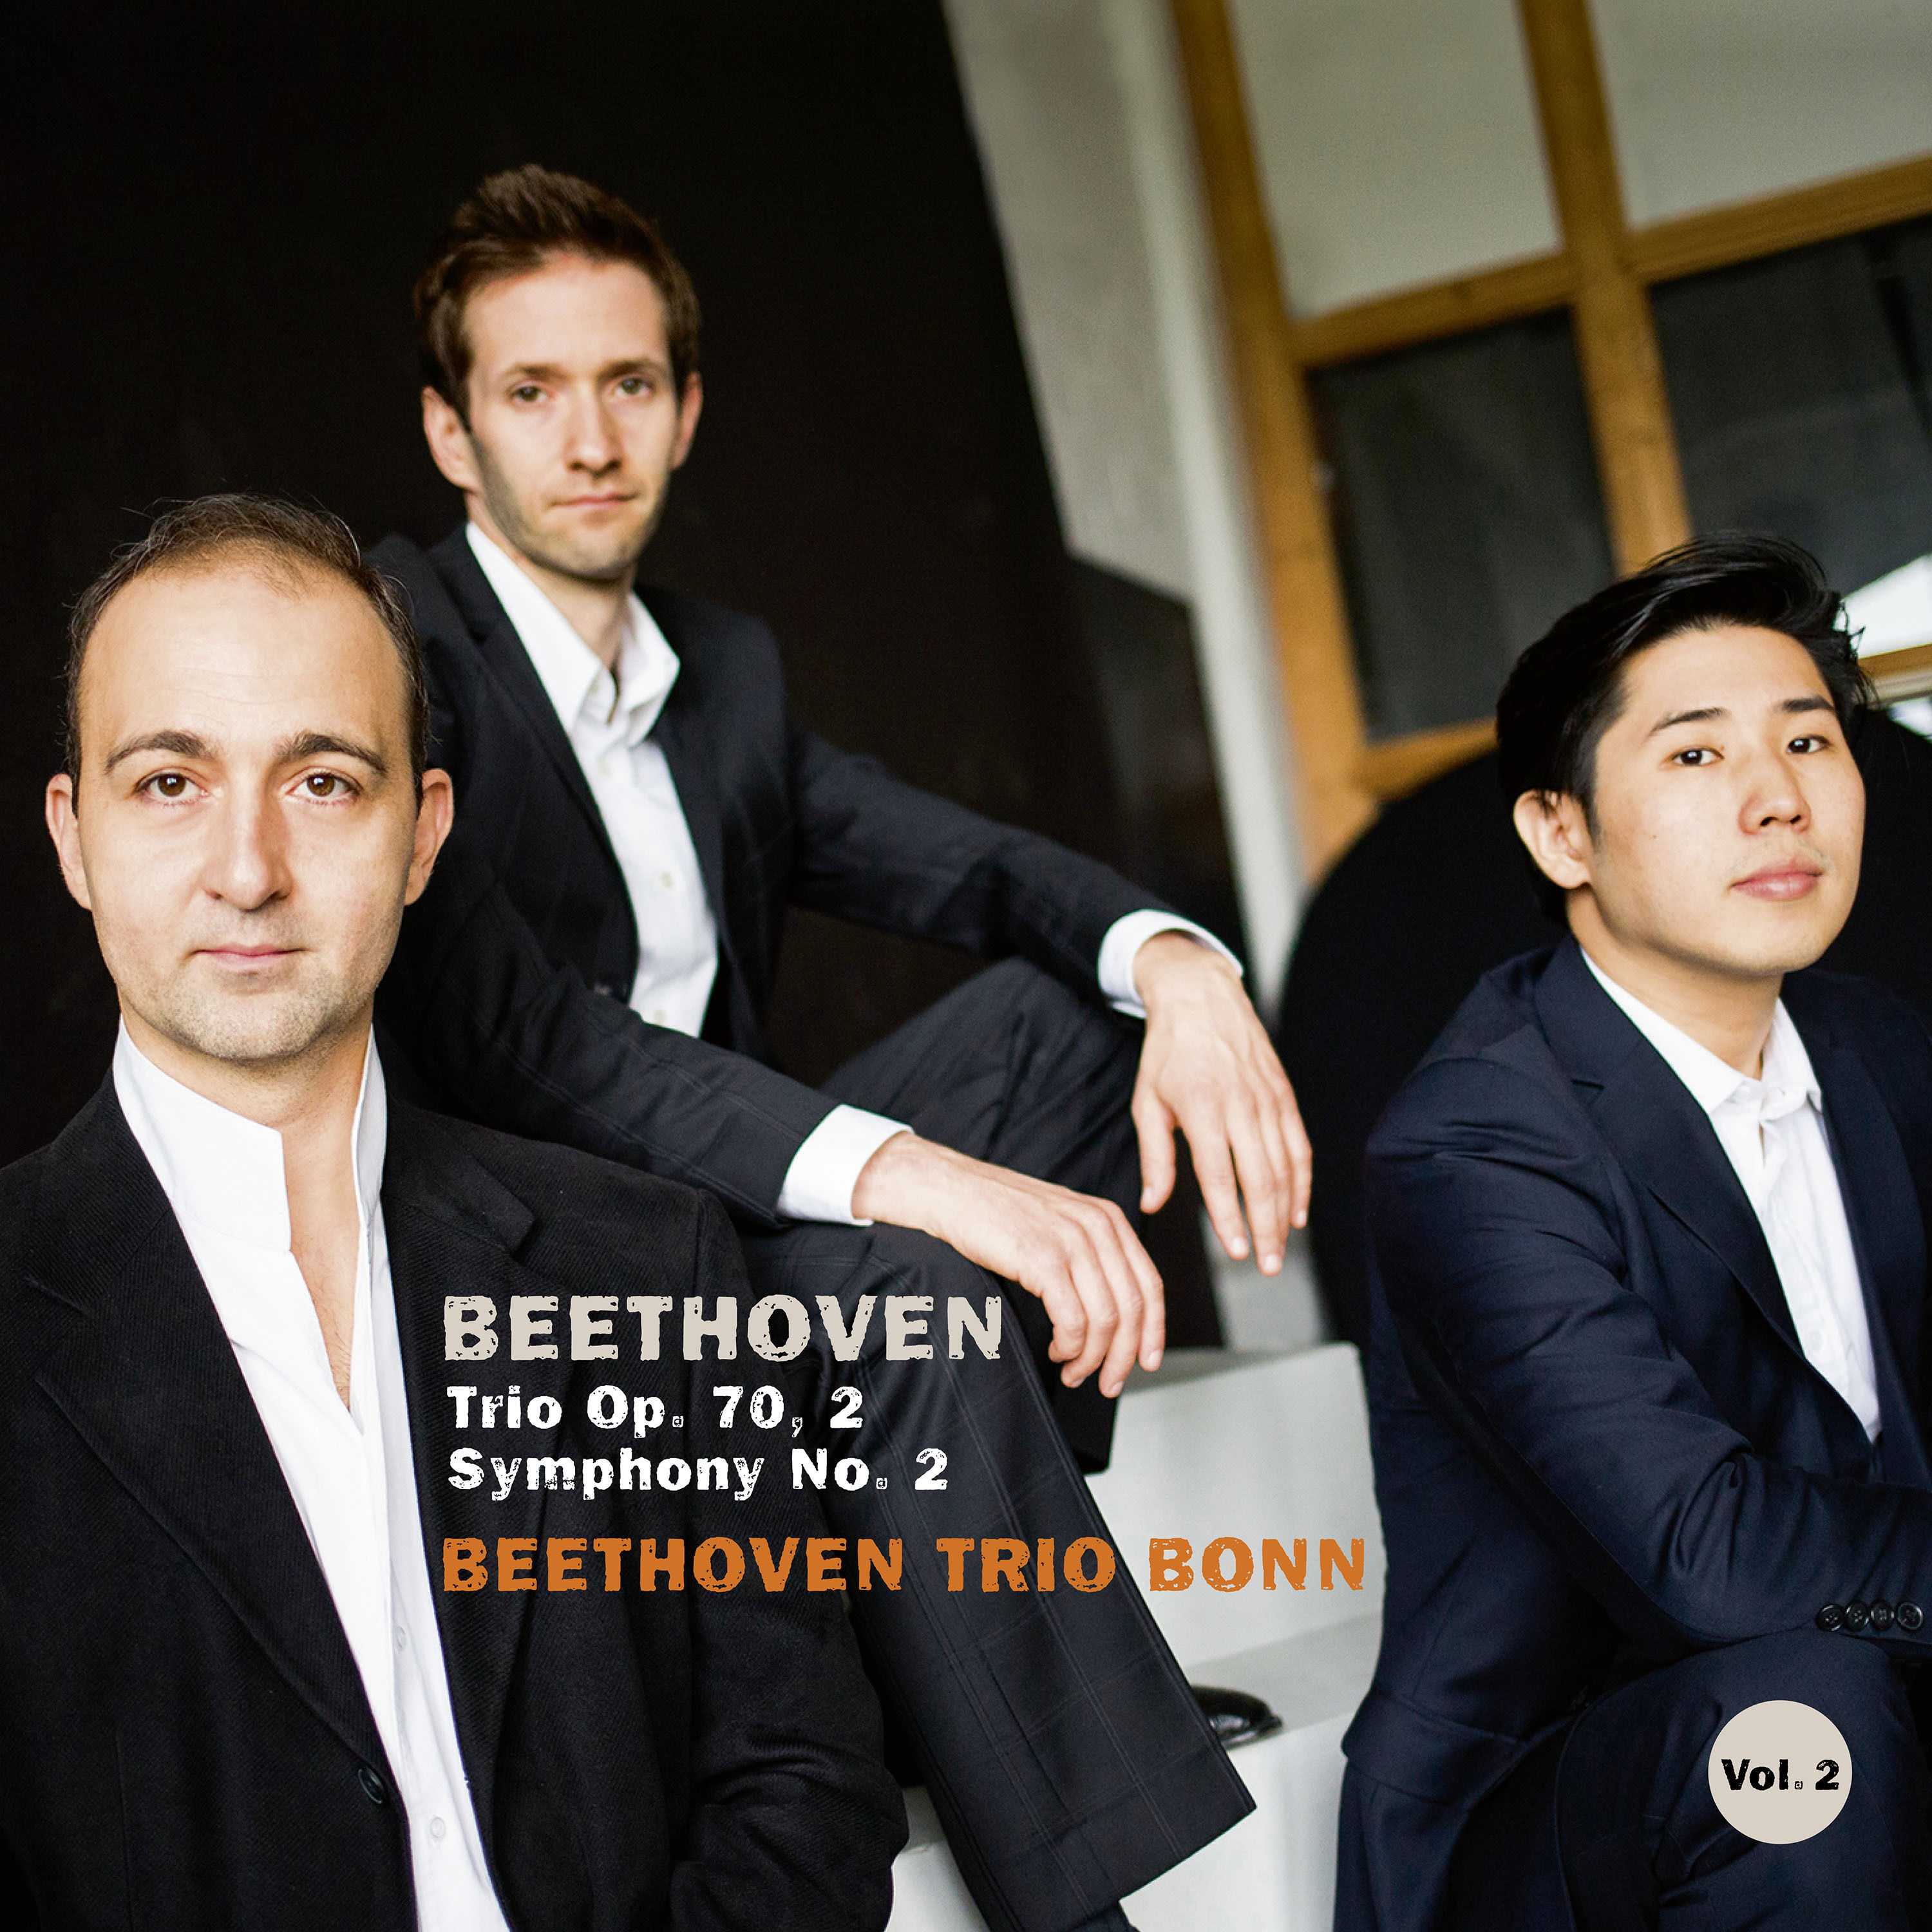 Beethoven Trio Bonn - Beethoven - Piano Trio Op. 70 No. 2 & Symphony No. 2 (2020) [FLAC 24bit/48kHz]